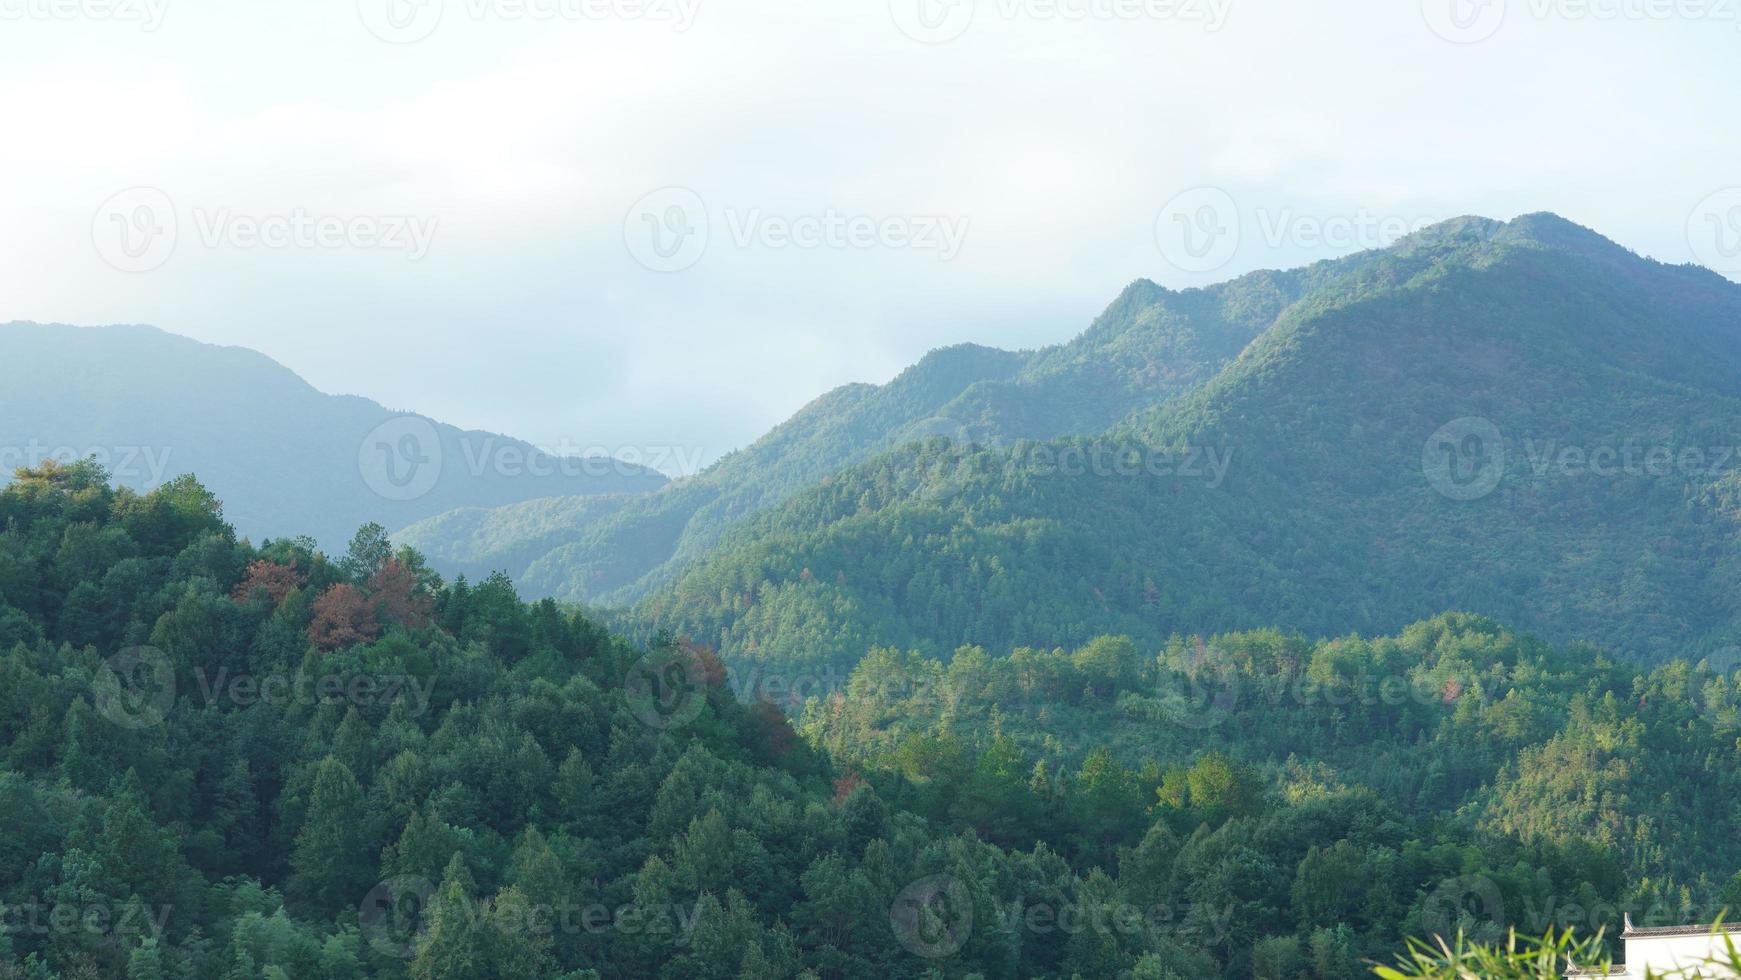 la belle vue sur le village chinois traditionnel avec l'architecture classique et les arbres verts frais en arrière-plan photo